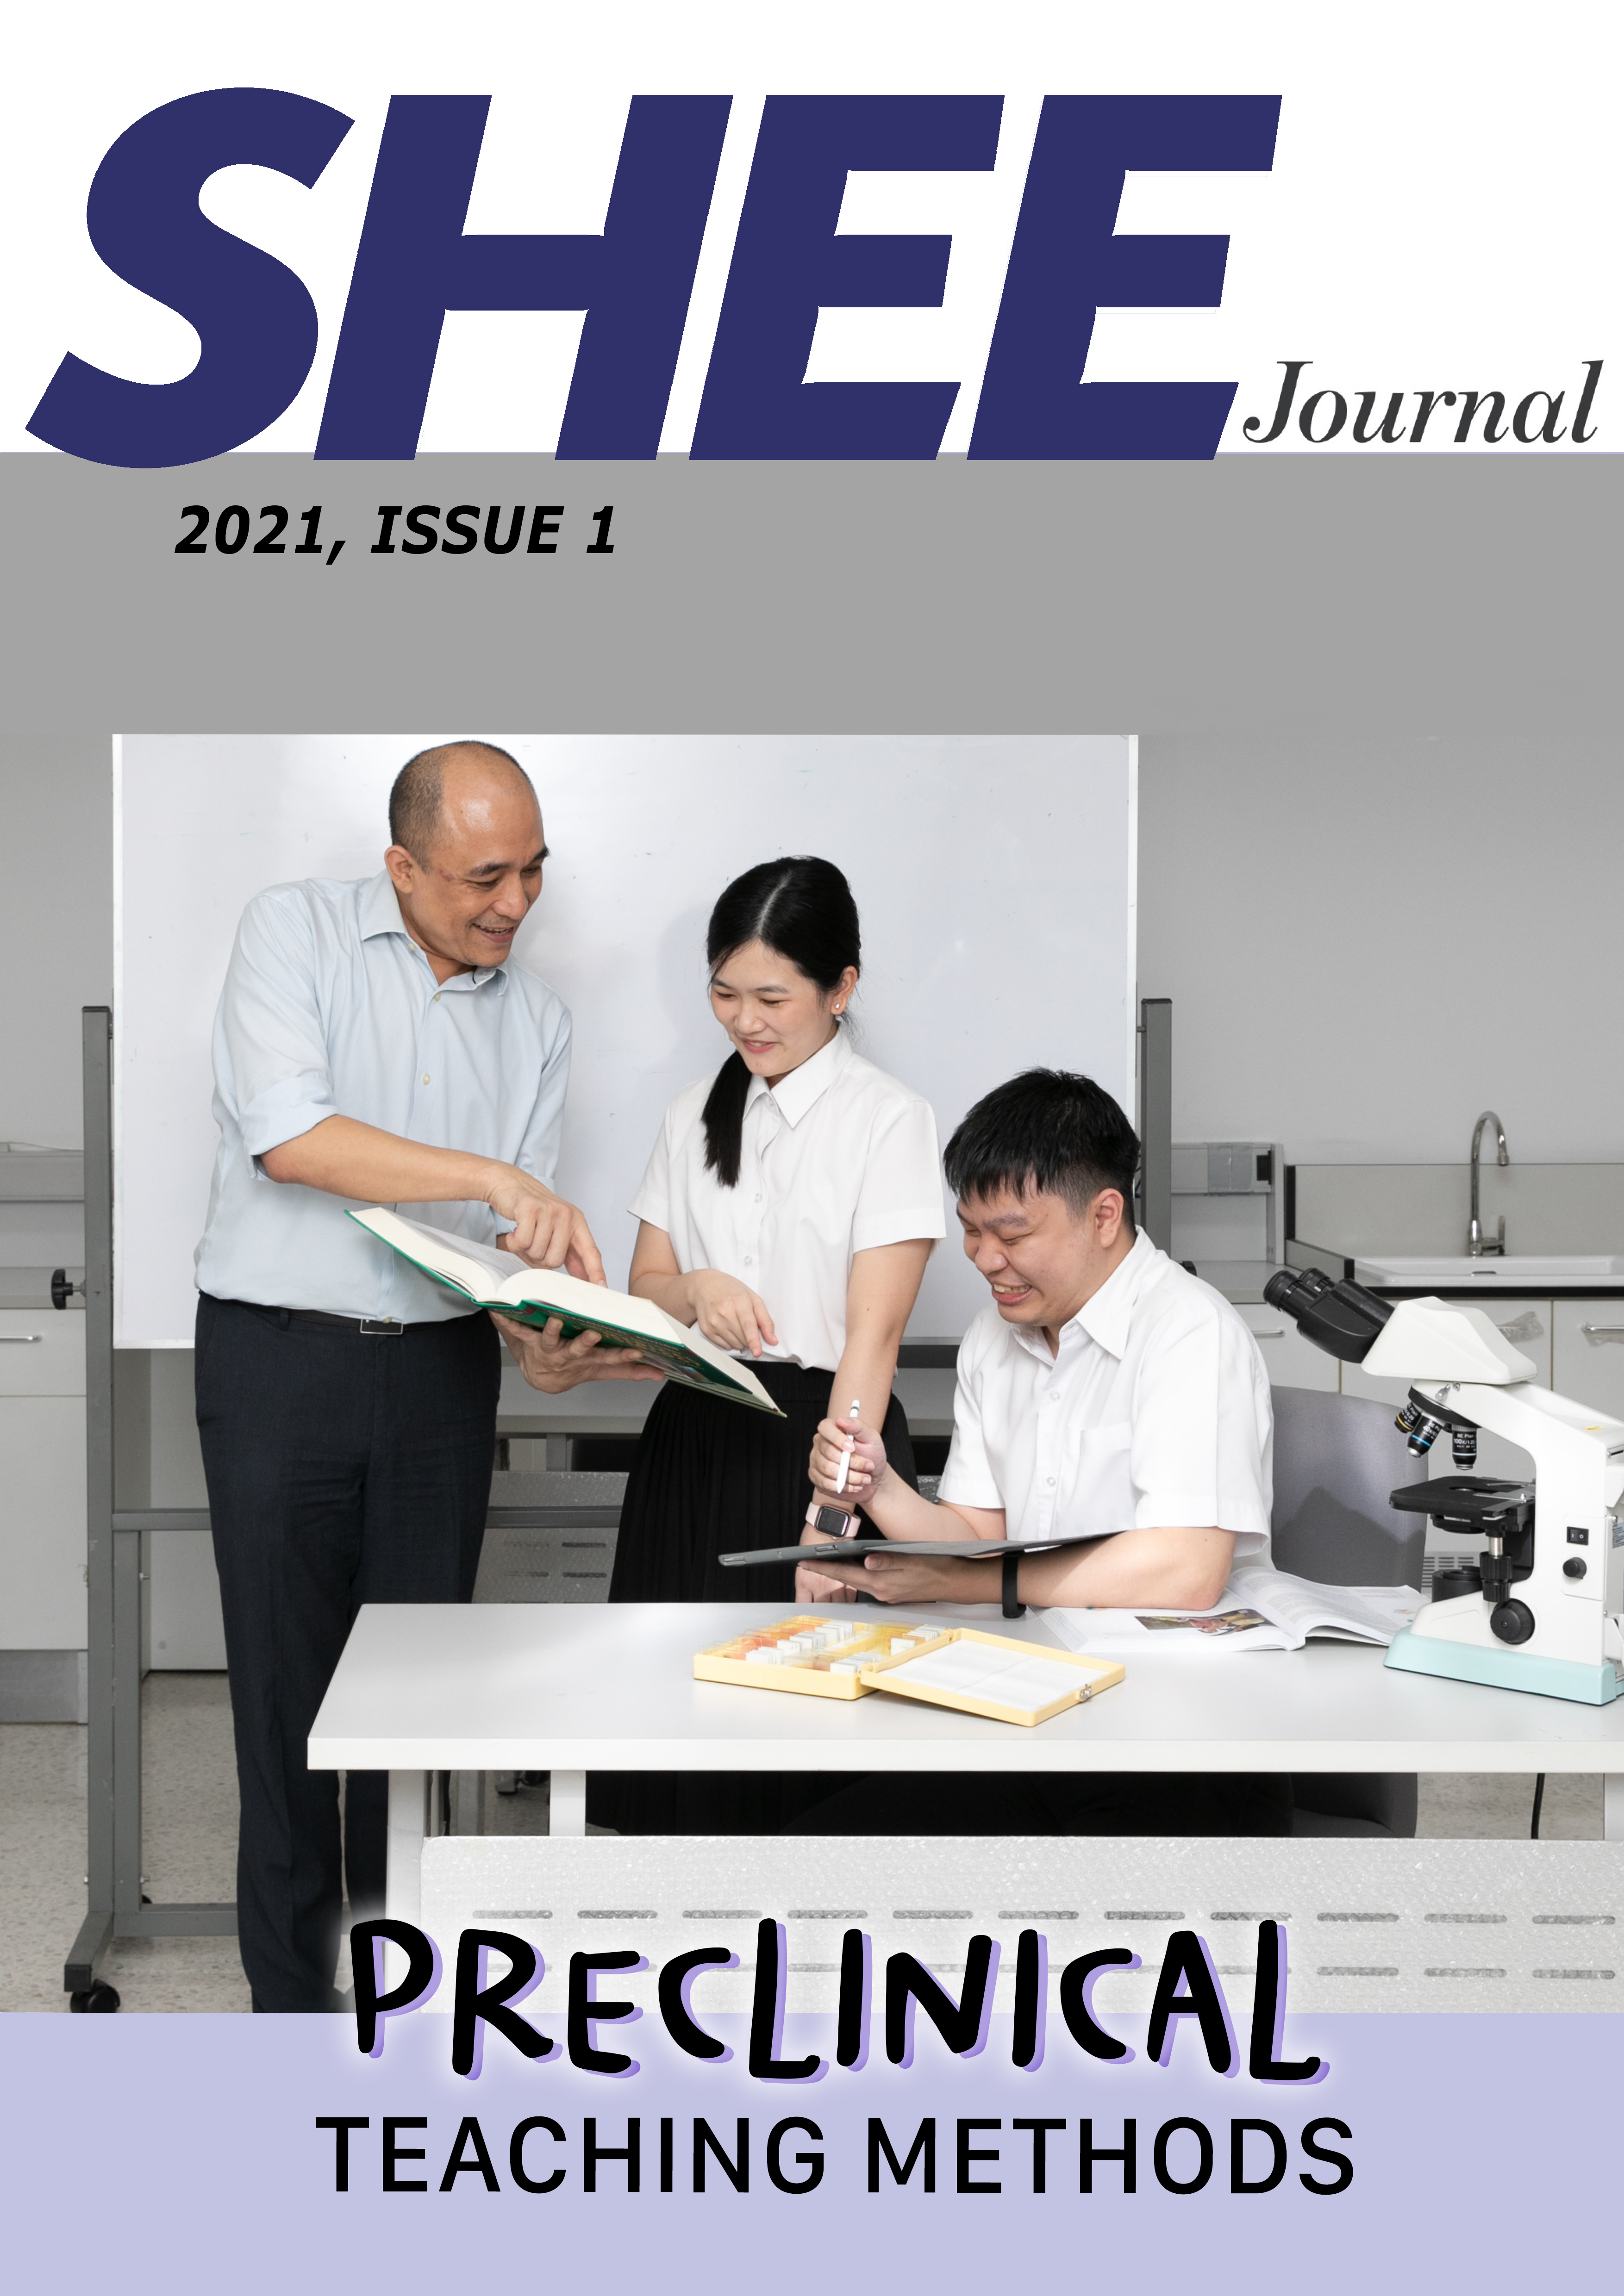 Journal Issue 1, 2021 เรื่อง Preclinical teaching methods